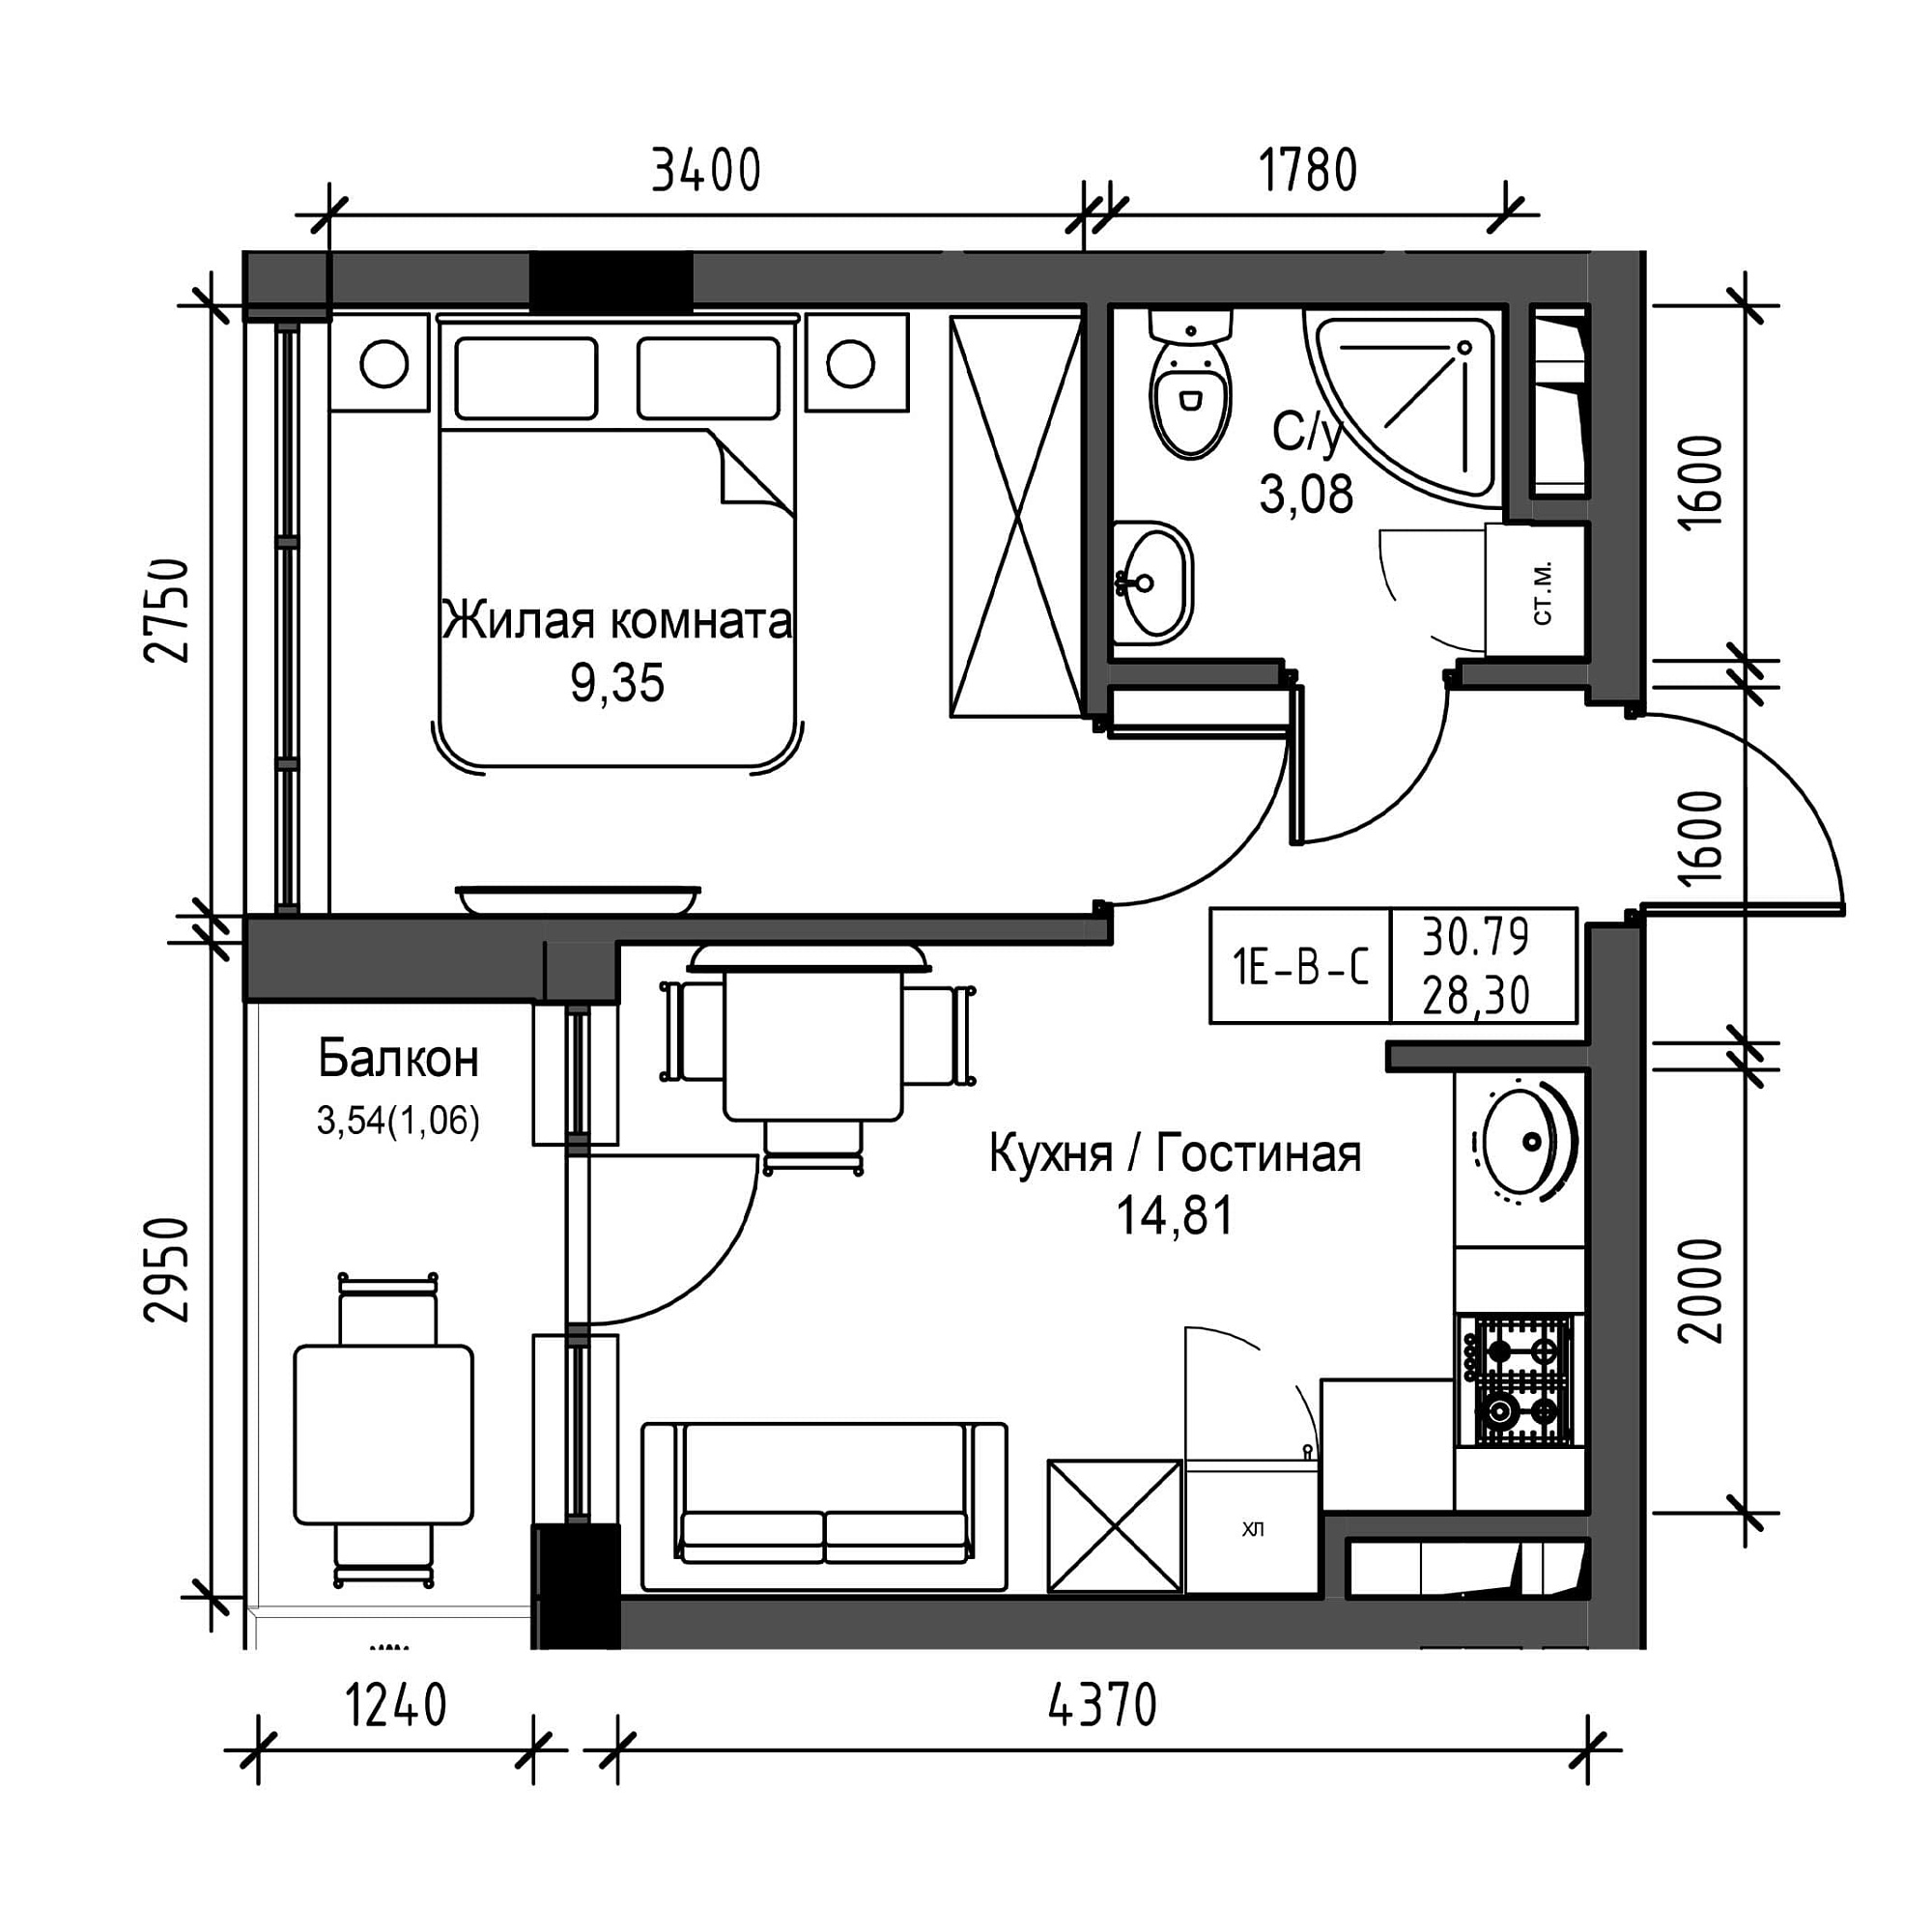 Планировка 1-к квартира площей 28.3м2, UM-001-03/0015.